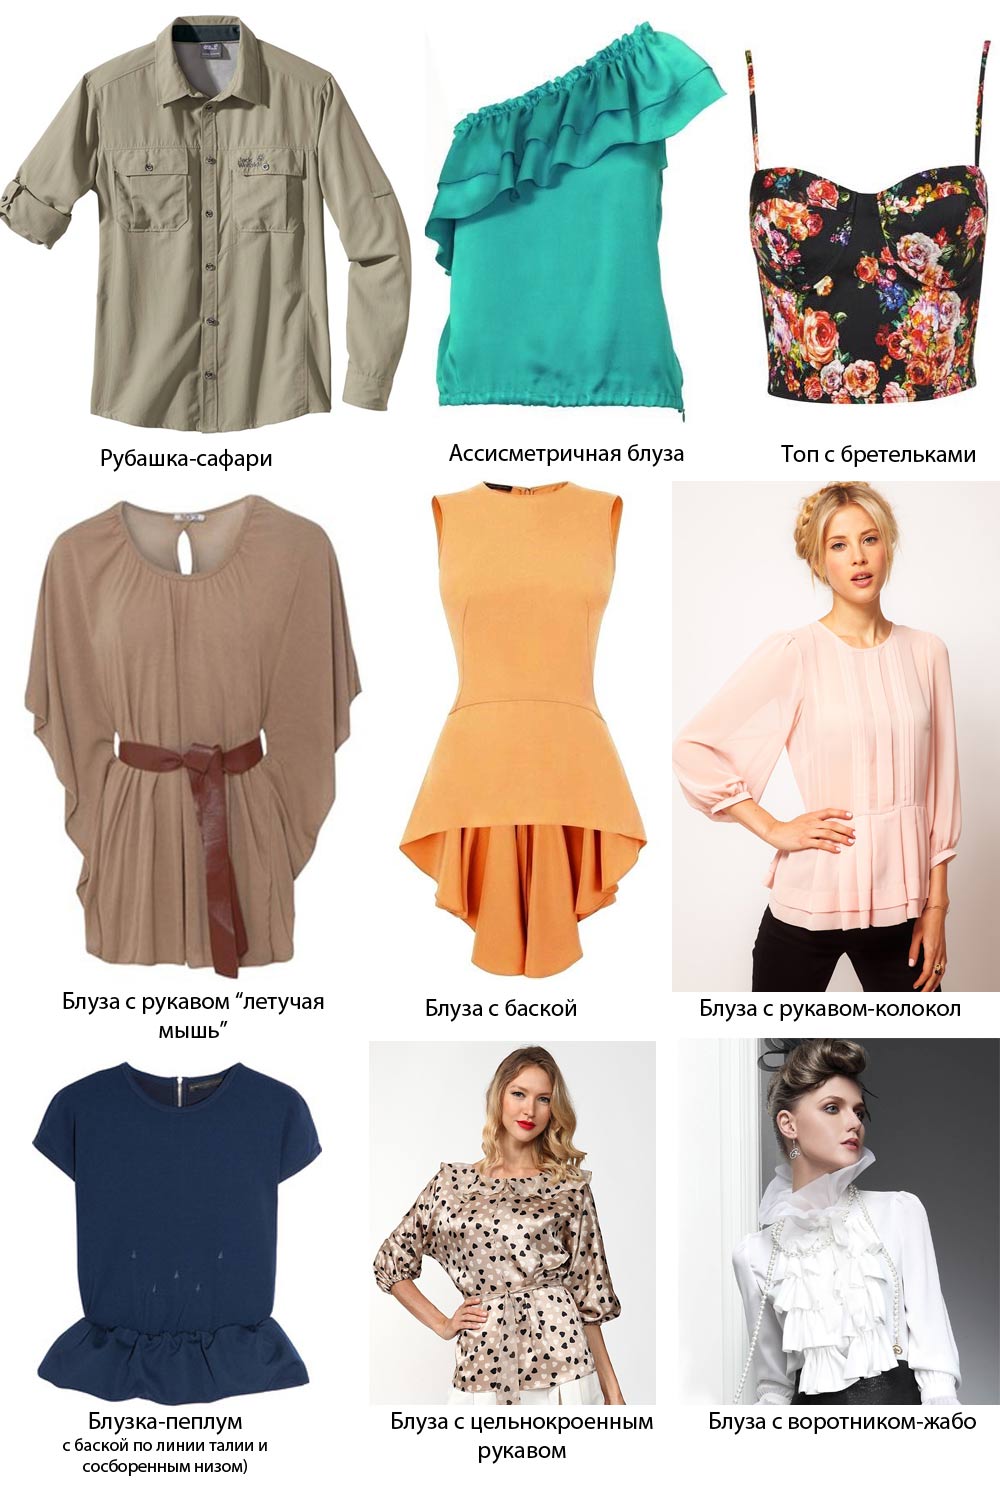 Тип блузок. Название женских кофточек. Типы блузок и их названия. Разнообразие кофт и их названия. Типы женских кофт названия.